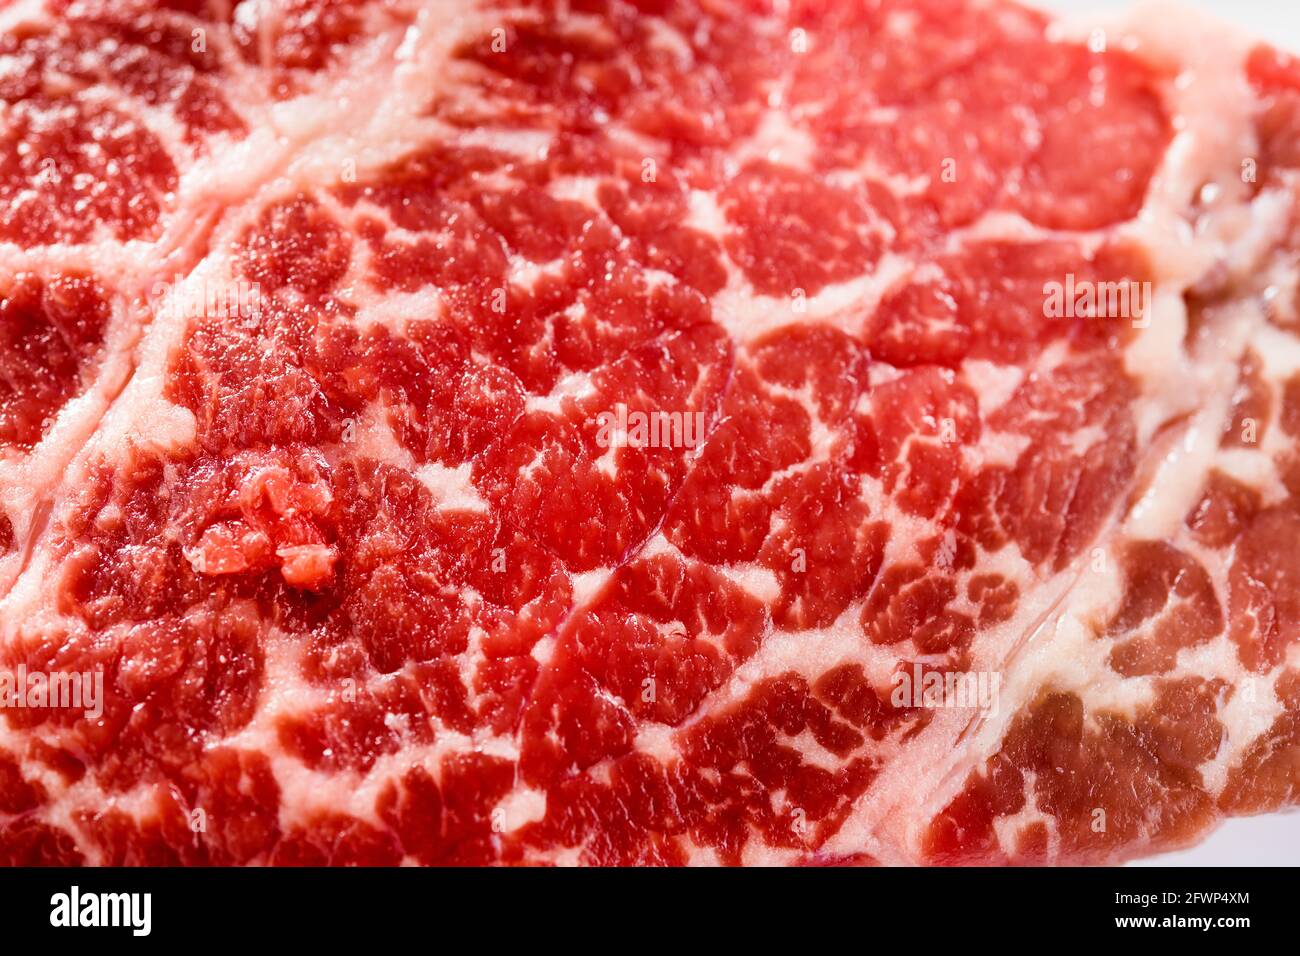 Bœuf le plus fin produit en douceur dans l'environnement, bœuf pur Angus, viande crue, steak parfaitement marbré et parsemé de veines de graisse meilleure qualité de viande pour les gourmets Banque D'Images